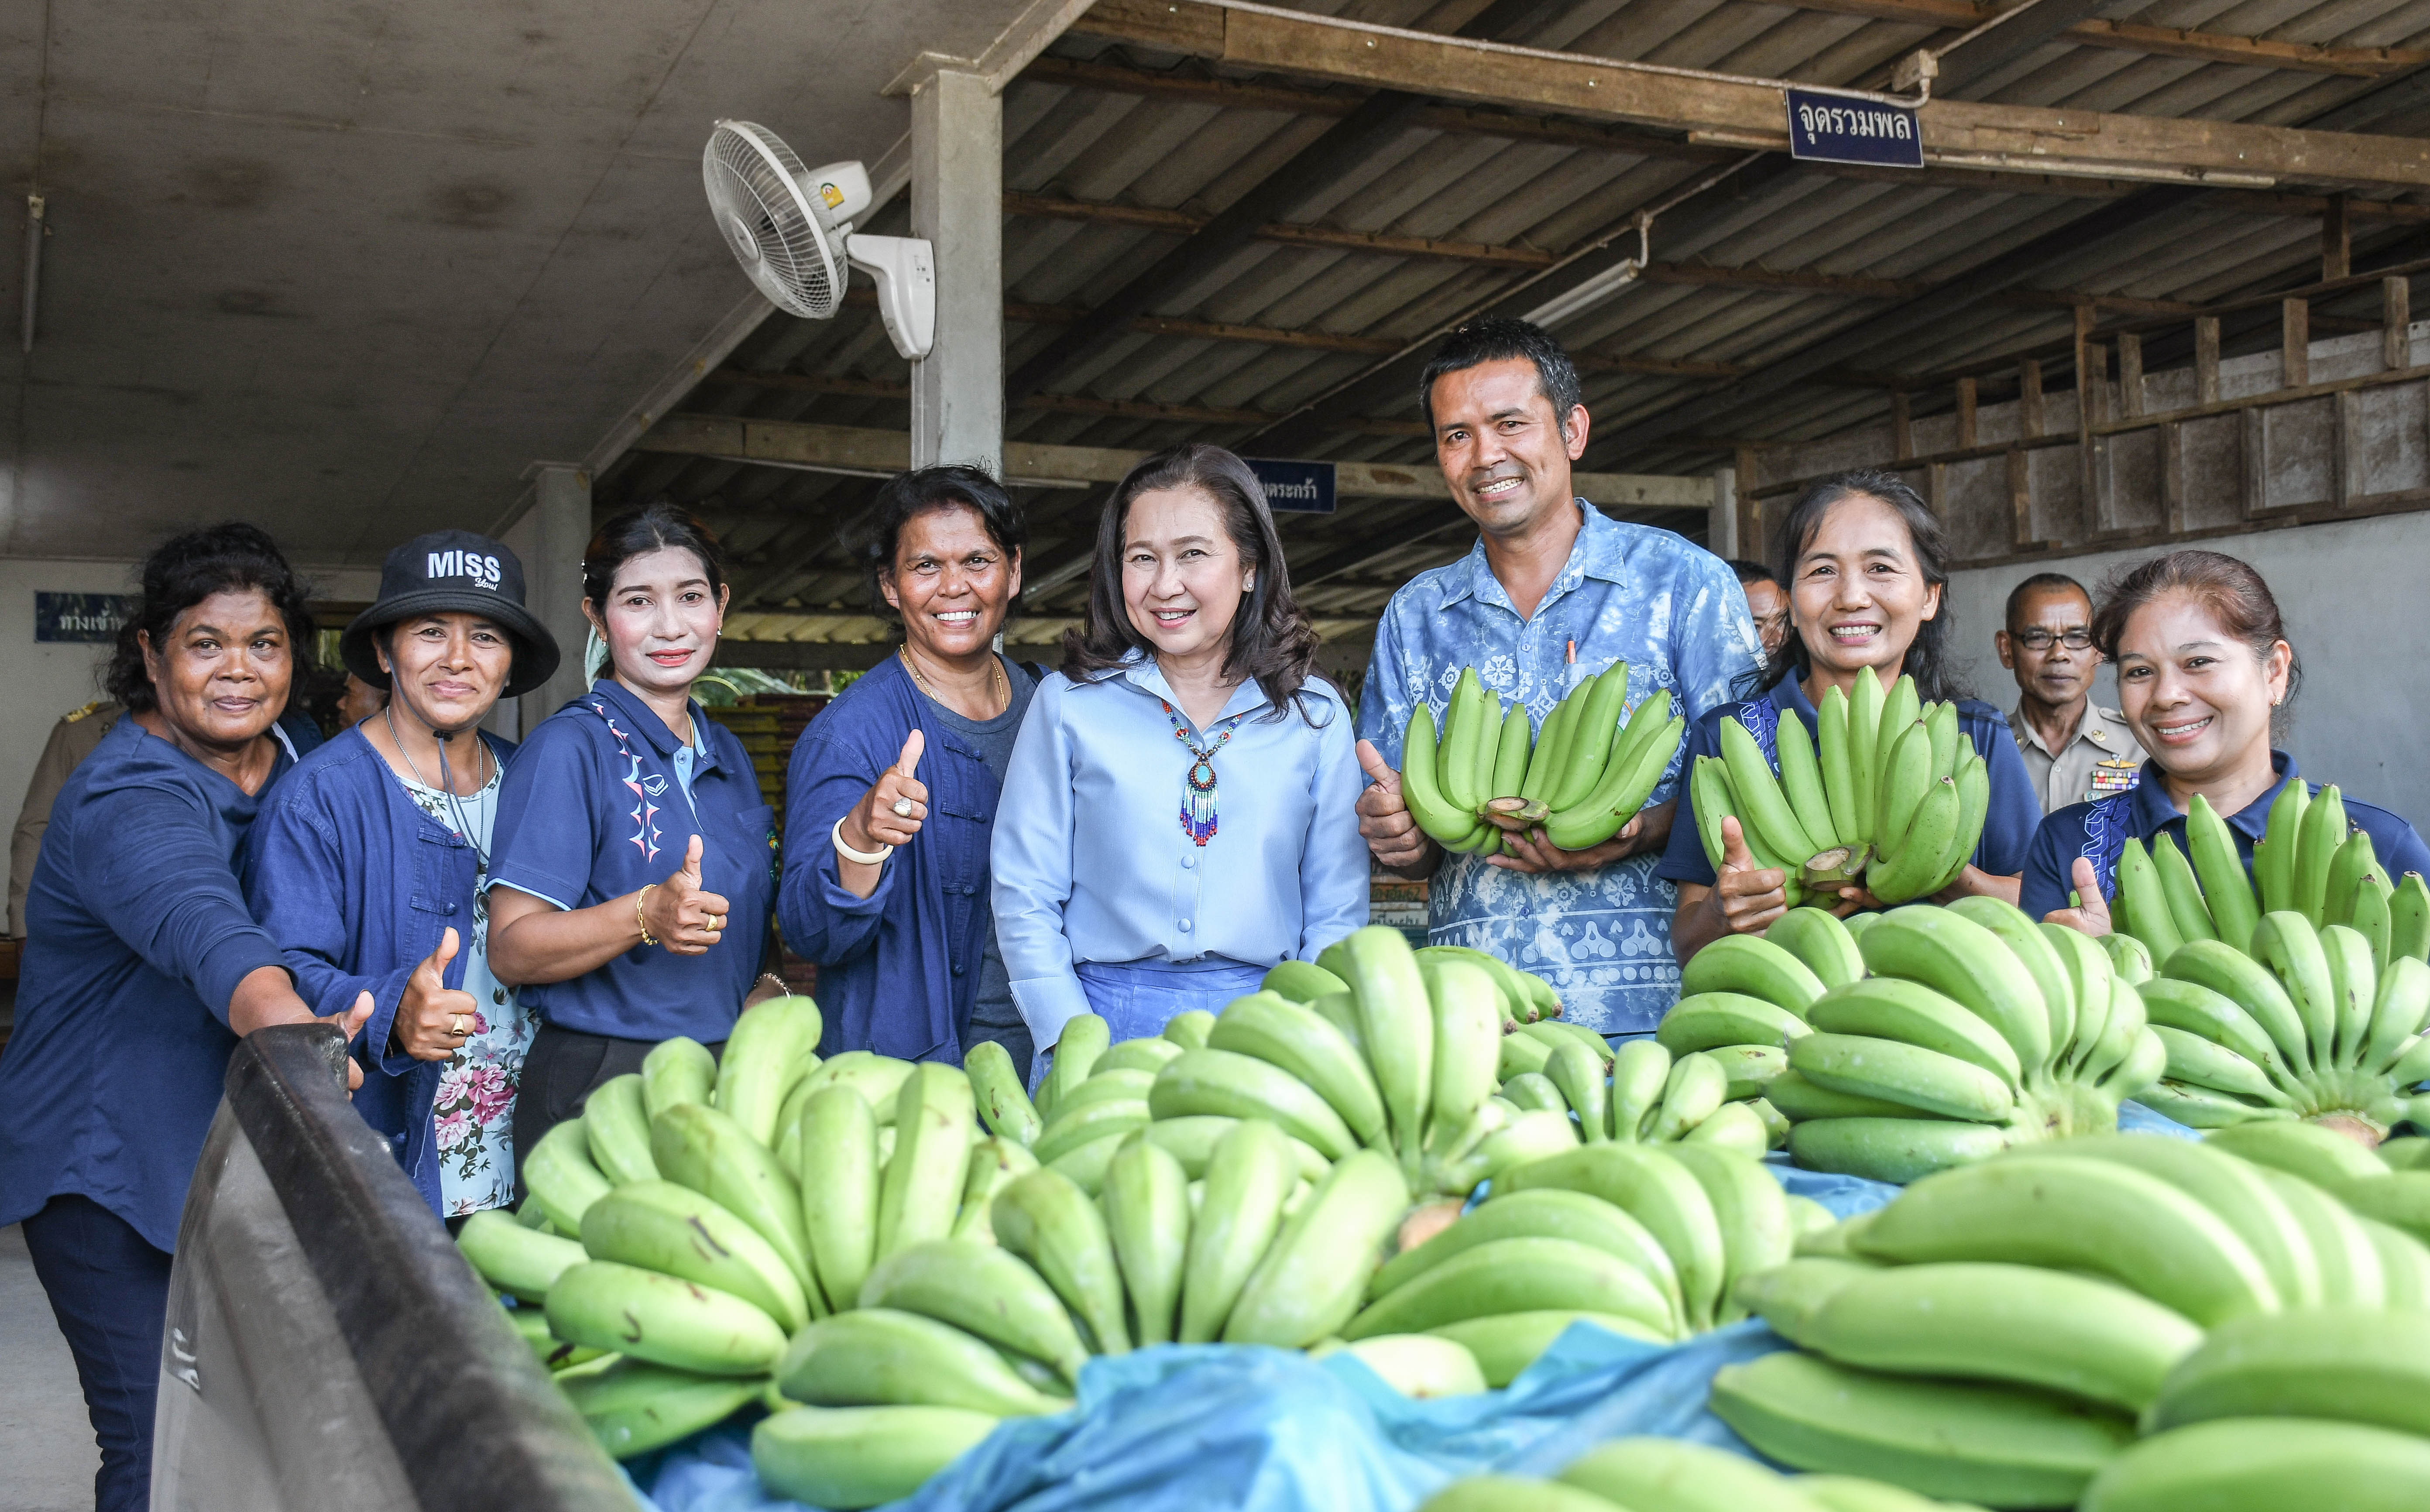 หลายหน่วยงานจับมือส่งเสริมเกษตรกรปลูกกล้วยหอม บันทึกความร่วมมือทางการค้าผลไม้กับวิสาหกิจชุมชนกลุ่มเกษตรกรปลูกกล้วยหอมทองและไม้ผลปลอดภัยอำเภอบางแก้ว ตั้งเป้าอนาคต “อำเภอบางแก้ว เมืองกล้วยหอม” 